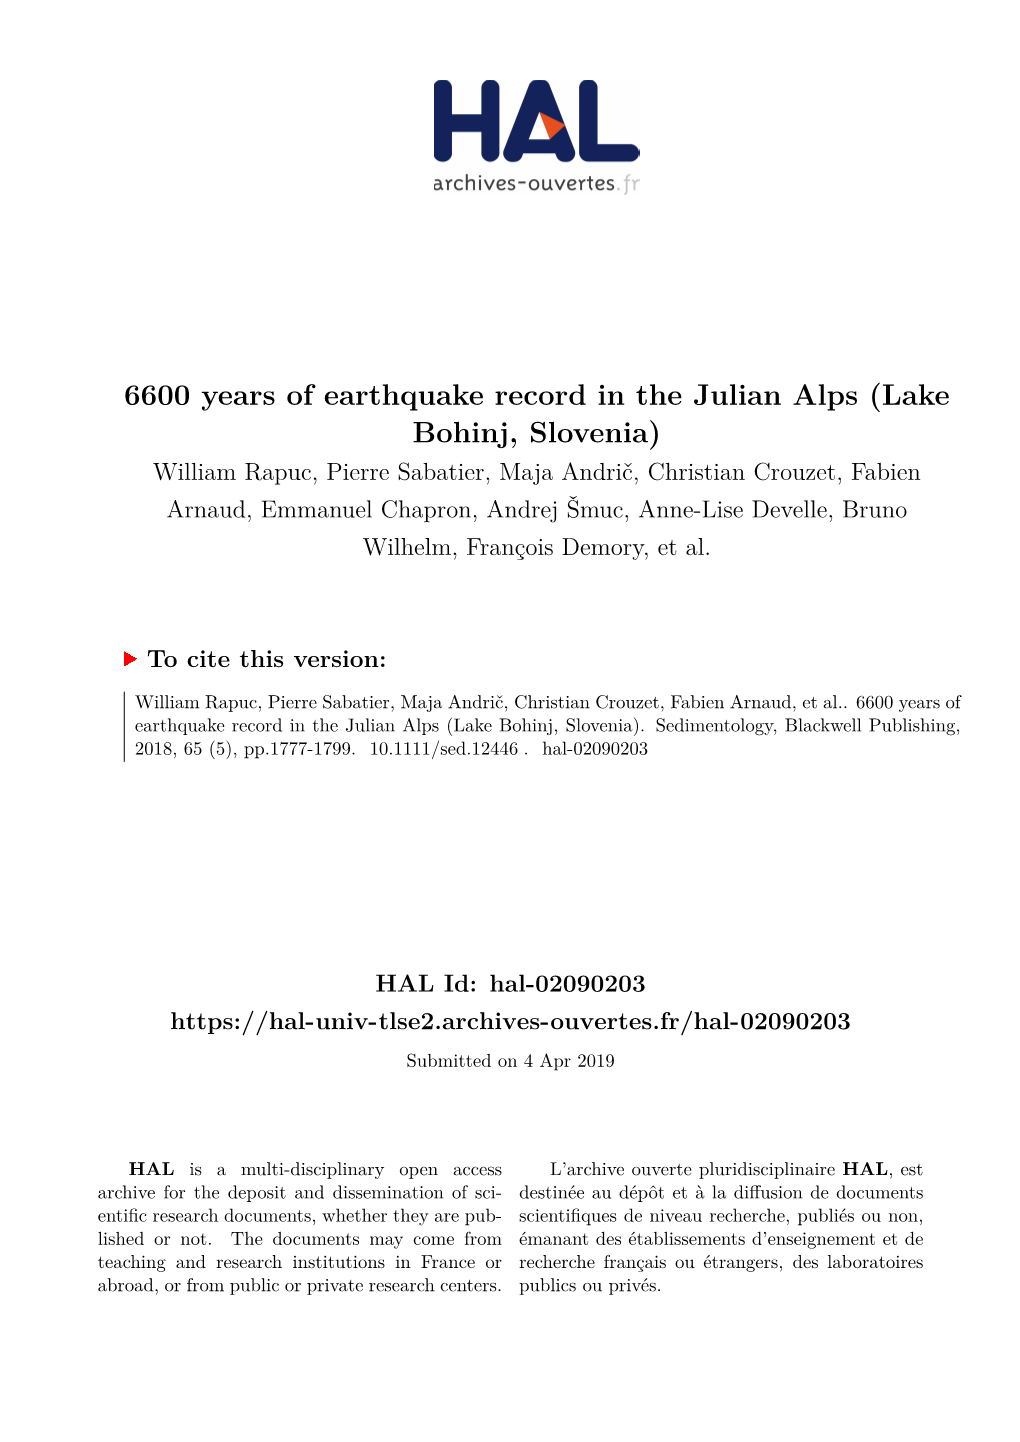 6600 Years of Earthquake Record in the Julian Alps (Lake Bohinj